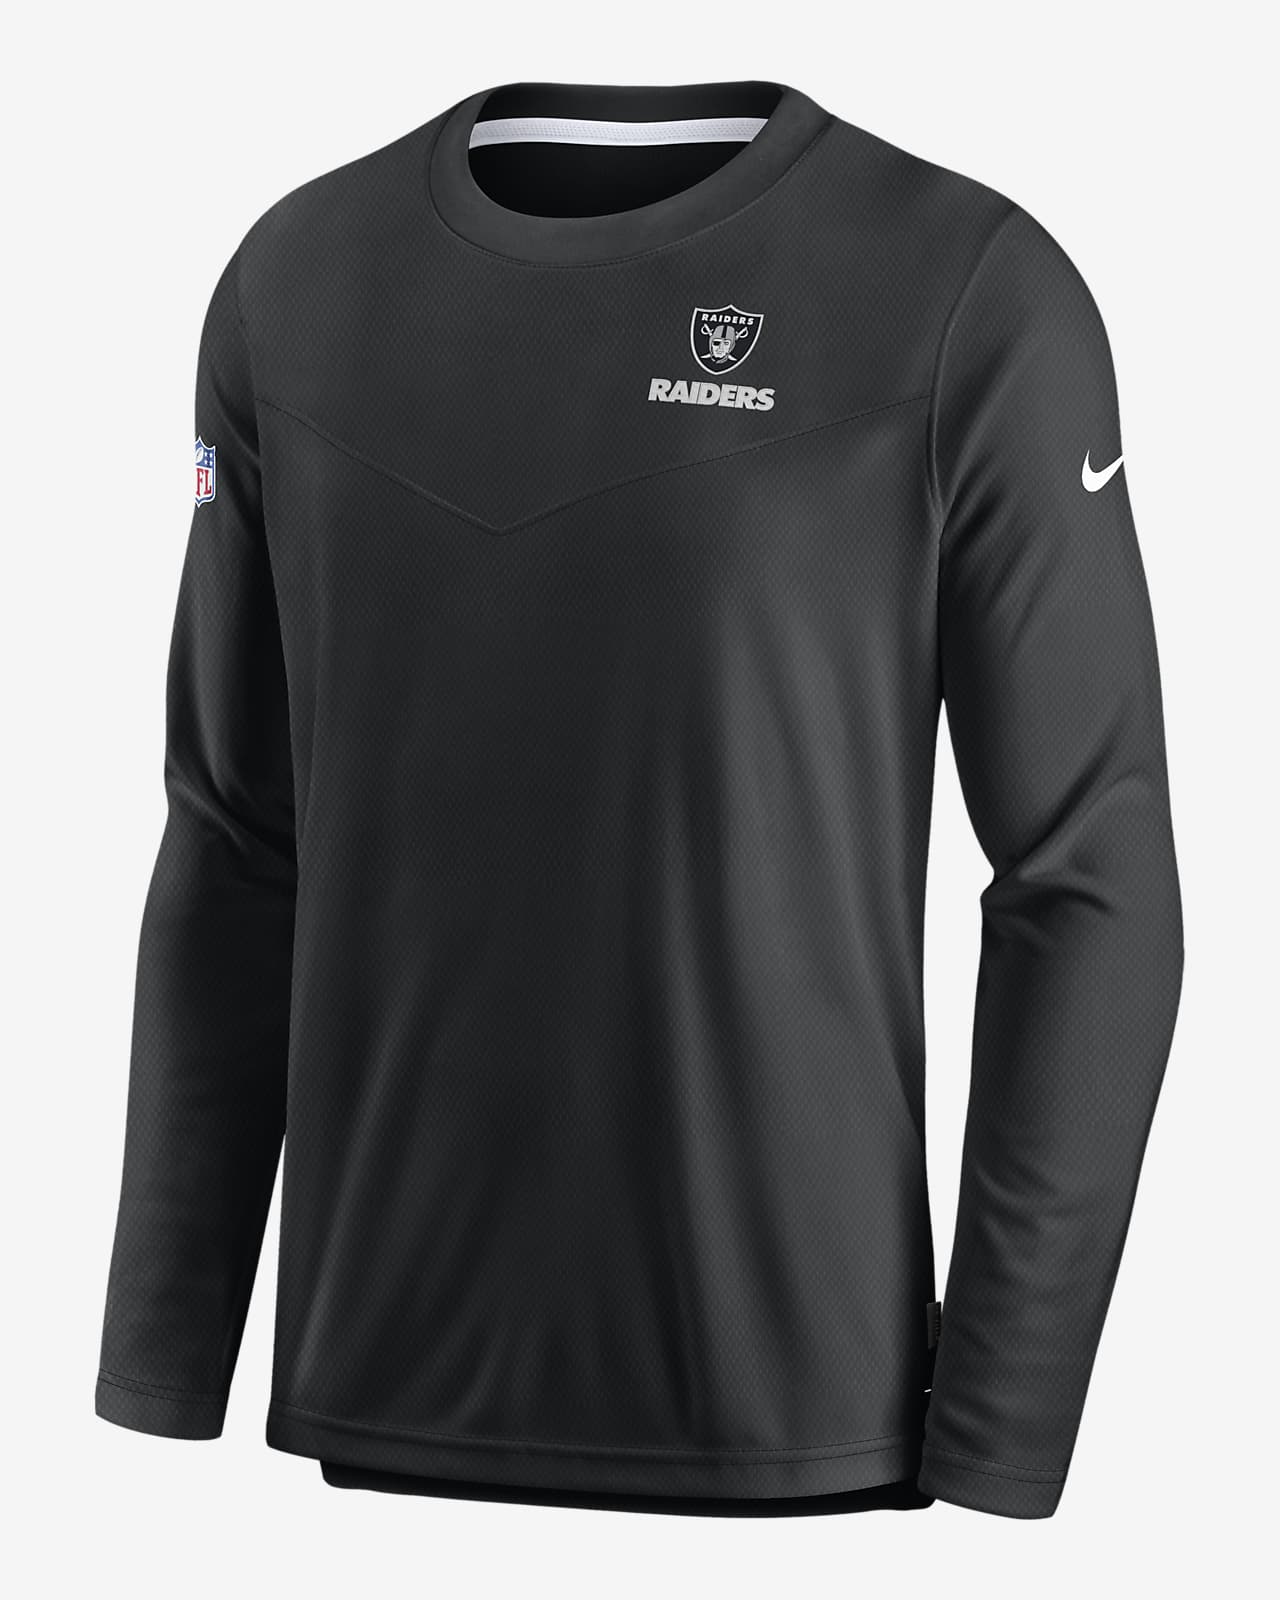 Las Vegas Raiders Men's Nike NFL Long-Sleeve Top